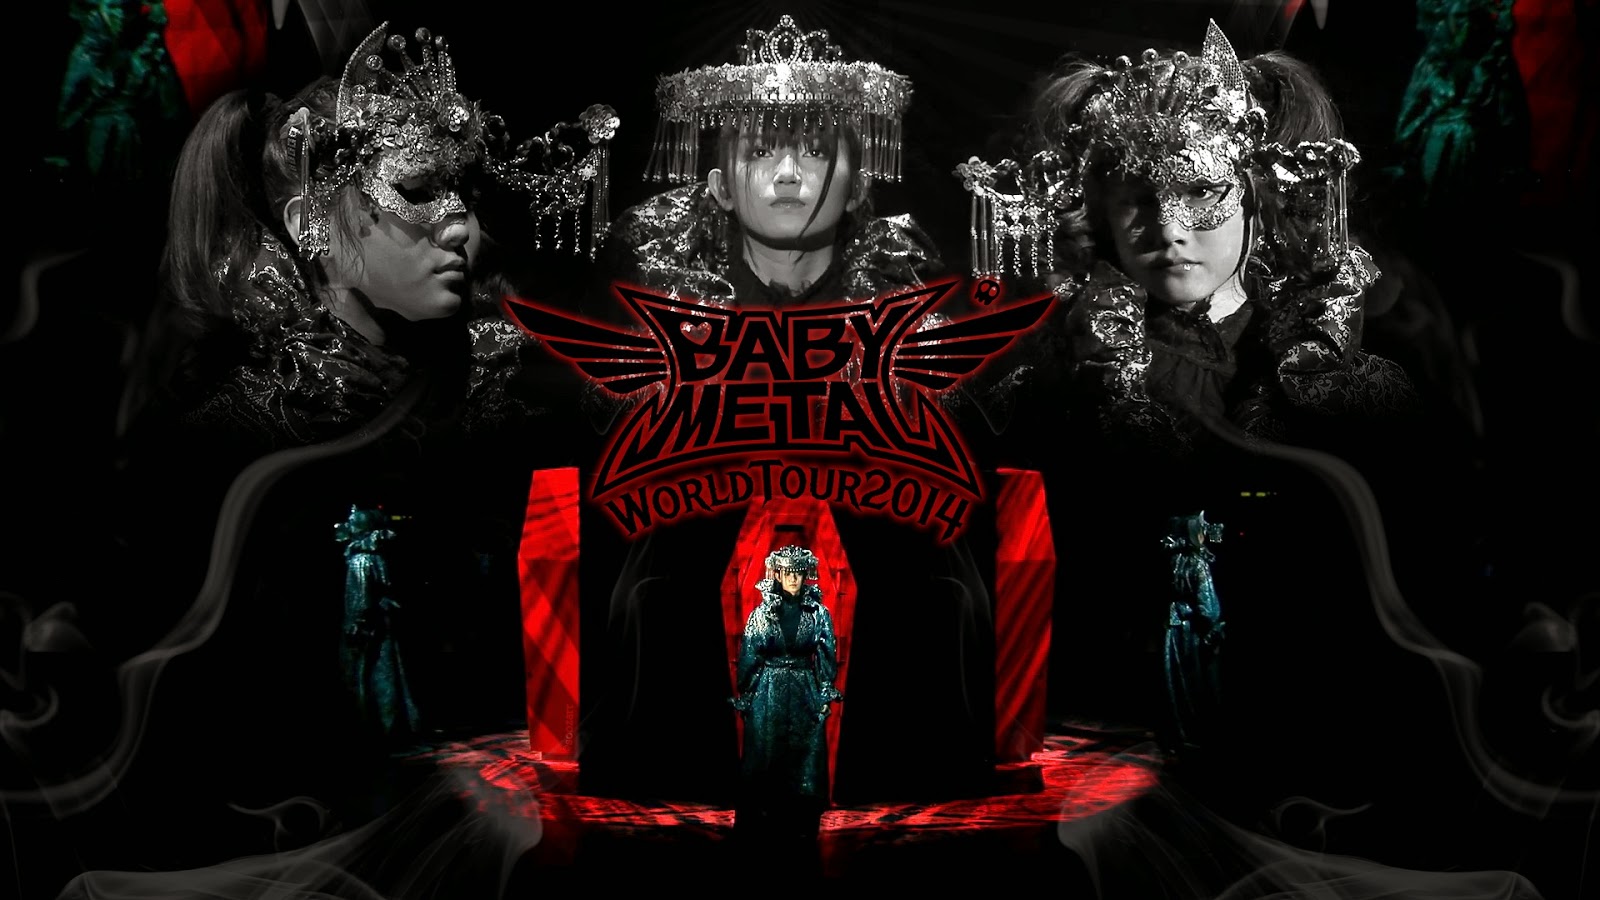 Babymetalの画像 原寸画像検索